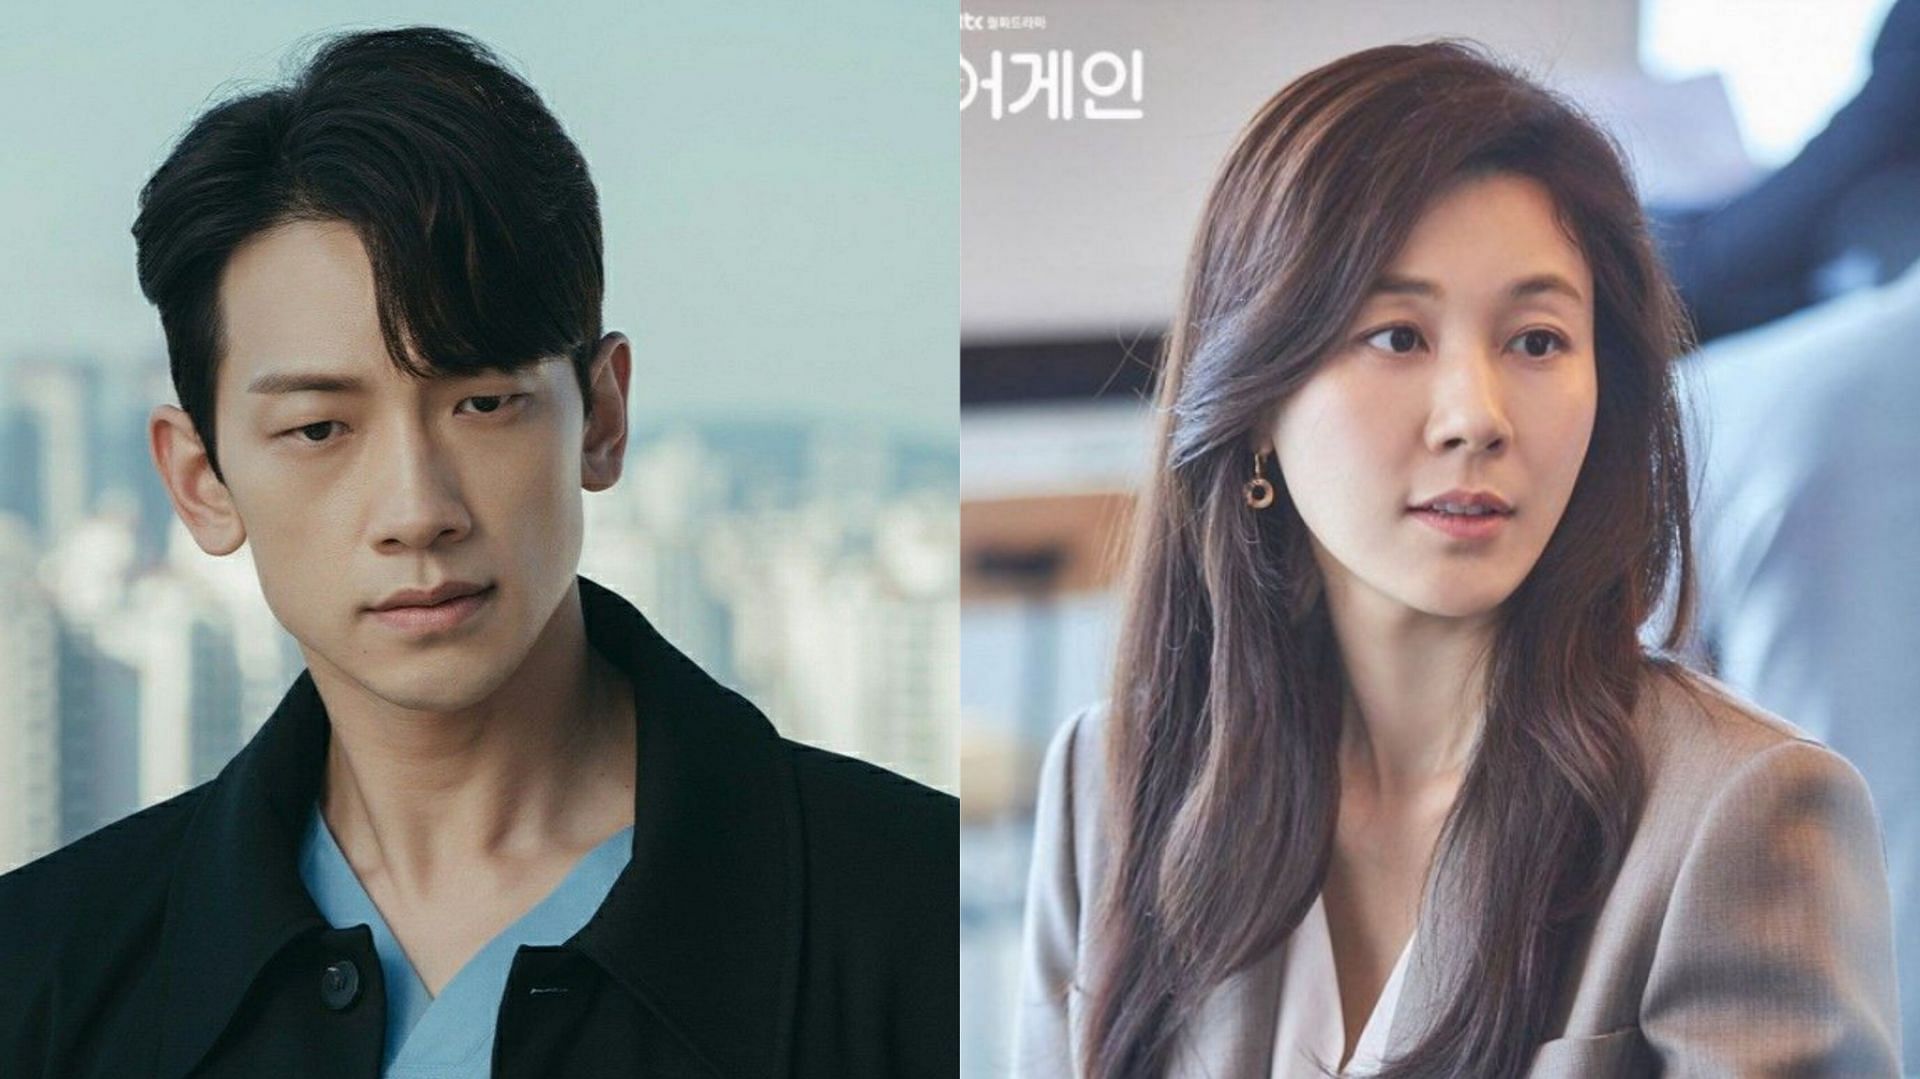 Featuring Rain and Kim Ha-neul (Image via tvN and JTBC)